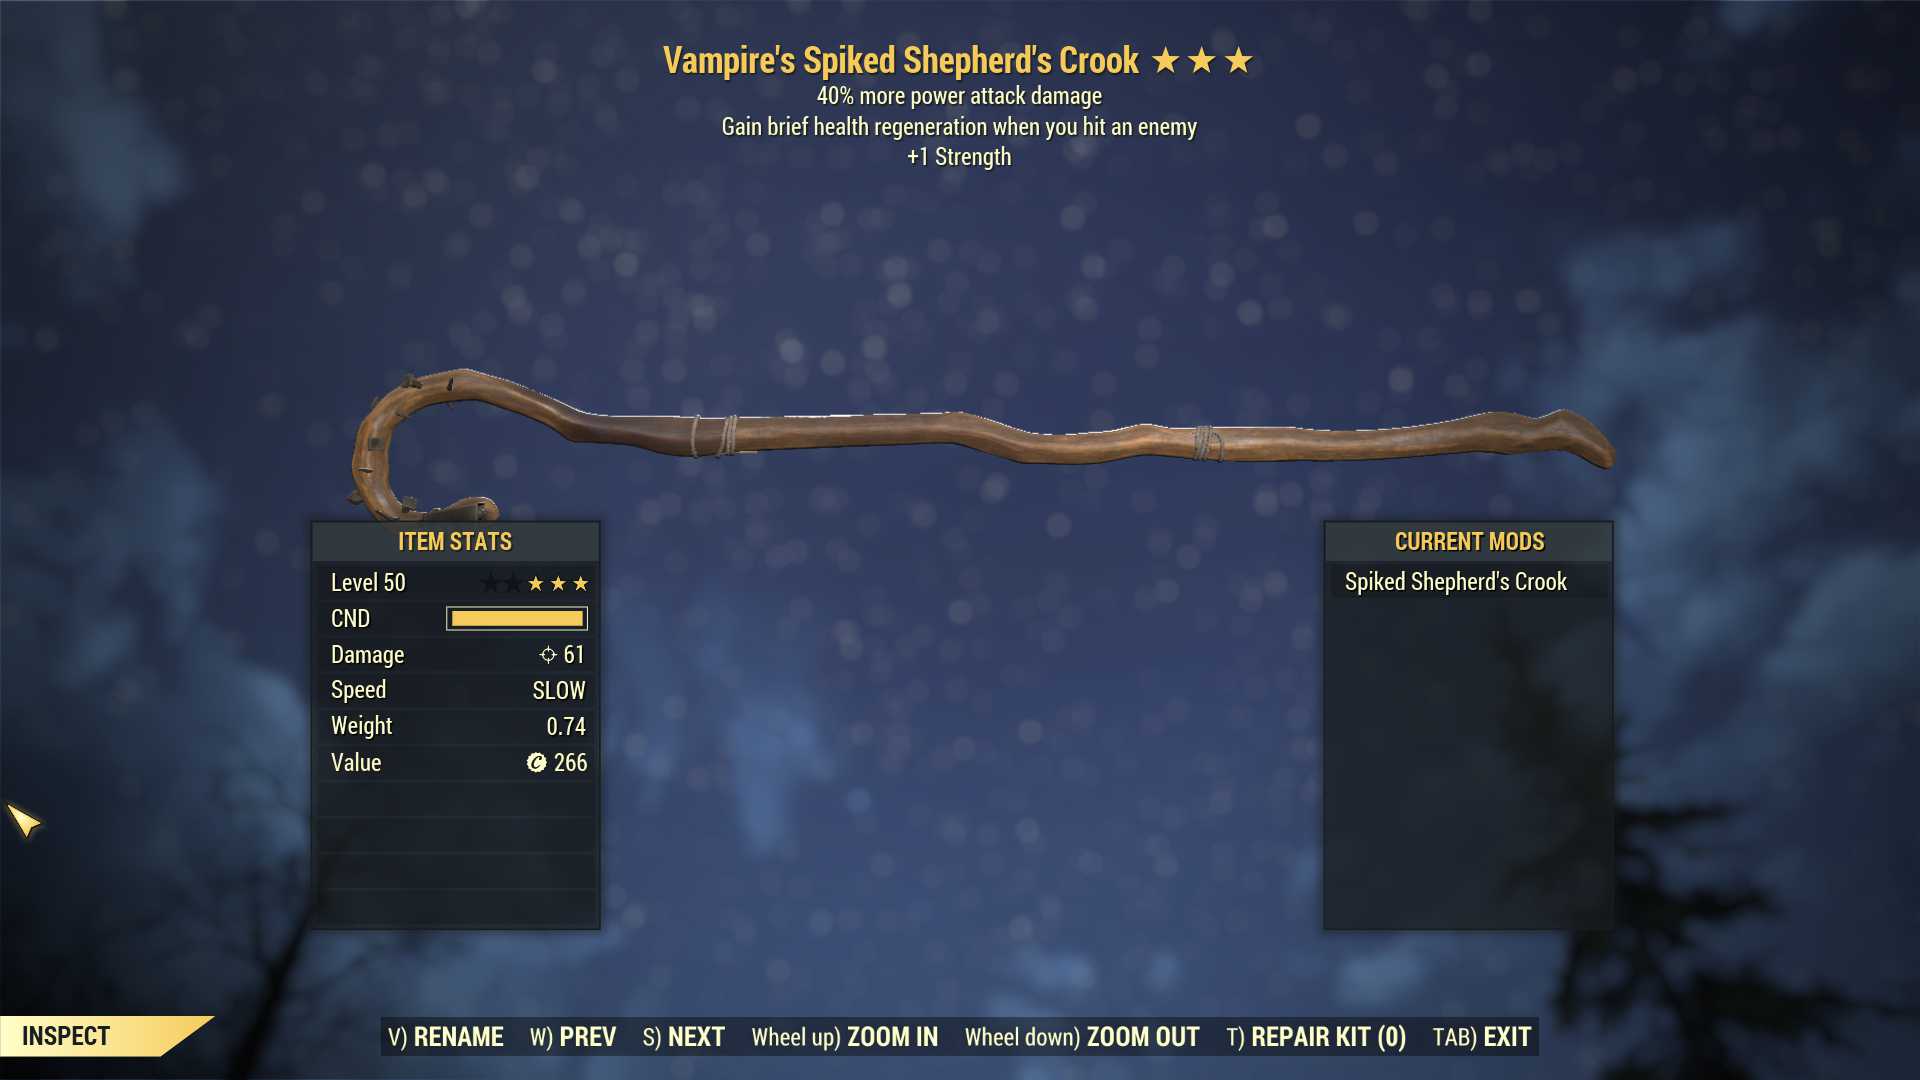 Vampire's Shepherd's Crook (+40% damage PA, +1 Strength)